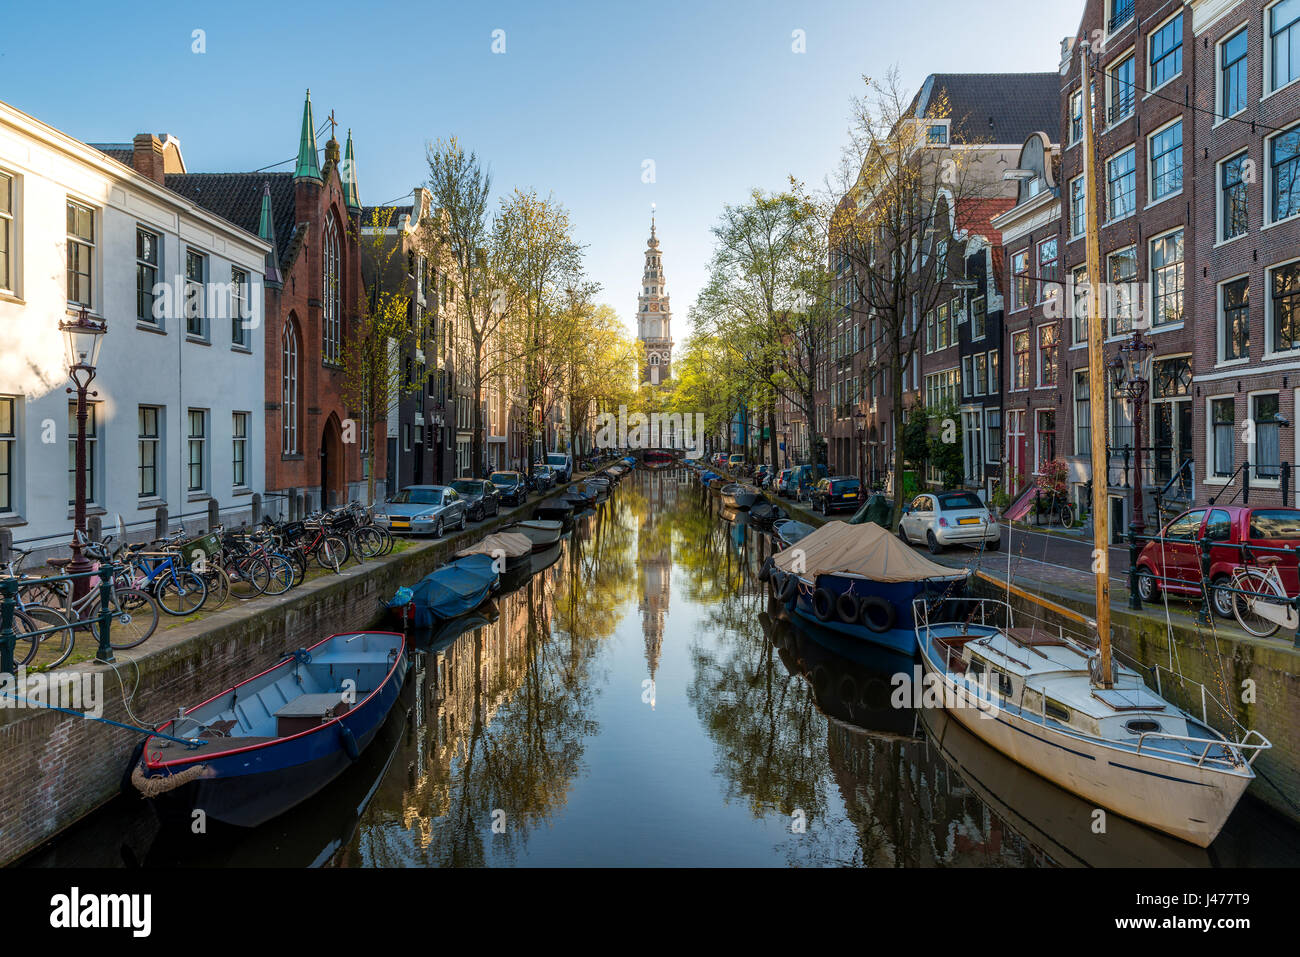 Häuser und Boote auf Kanal von Amsterdam, Niederlande. Morgen-Foto von bunten Häusern im holländischen Stil mit Spiegelung im Wasser in Amsterdam, Niederlande Stockfoto